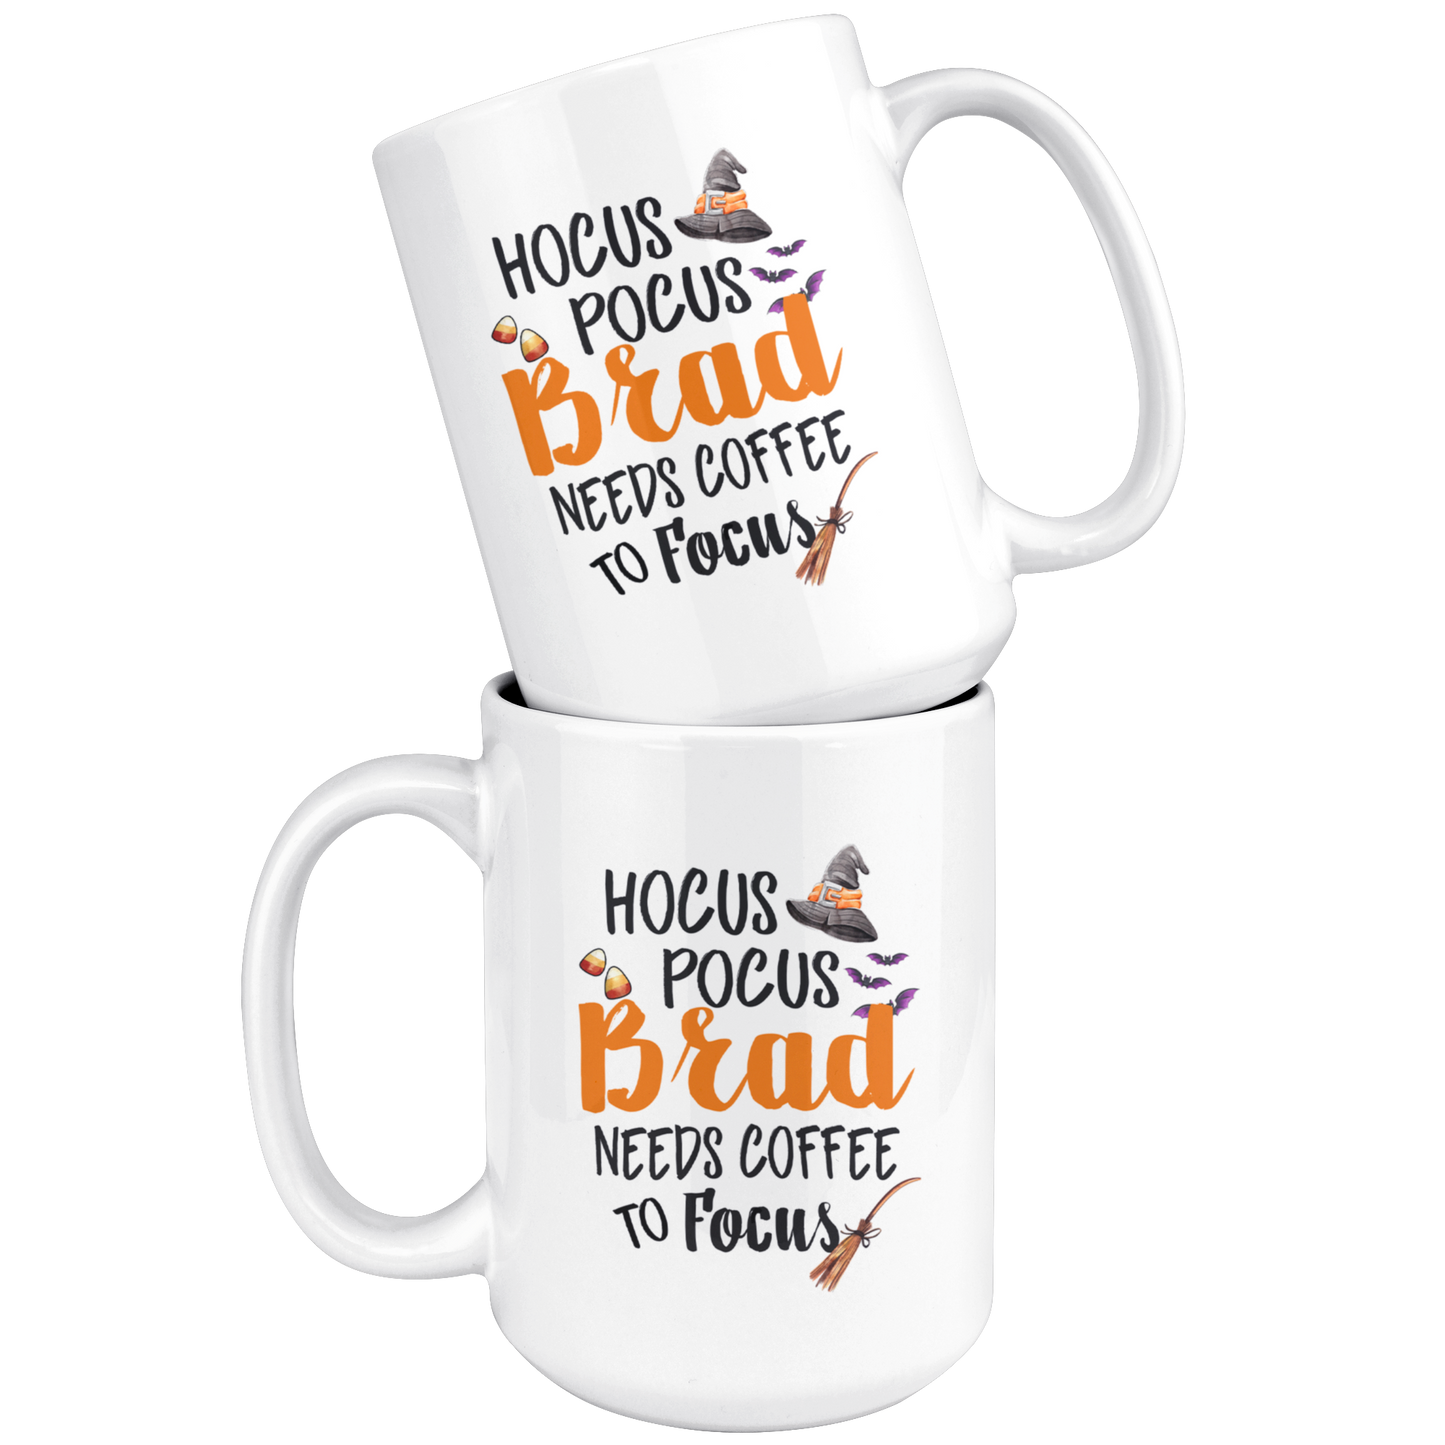 ND-20837725-sp-25439 - [ Brad | 1 | 1 ] (mug_15oz_white) 15oz. Ceramic Mug - Hocus Pocus Brad Needs Coffee To Focus -